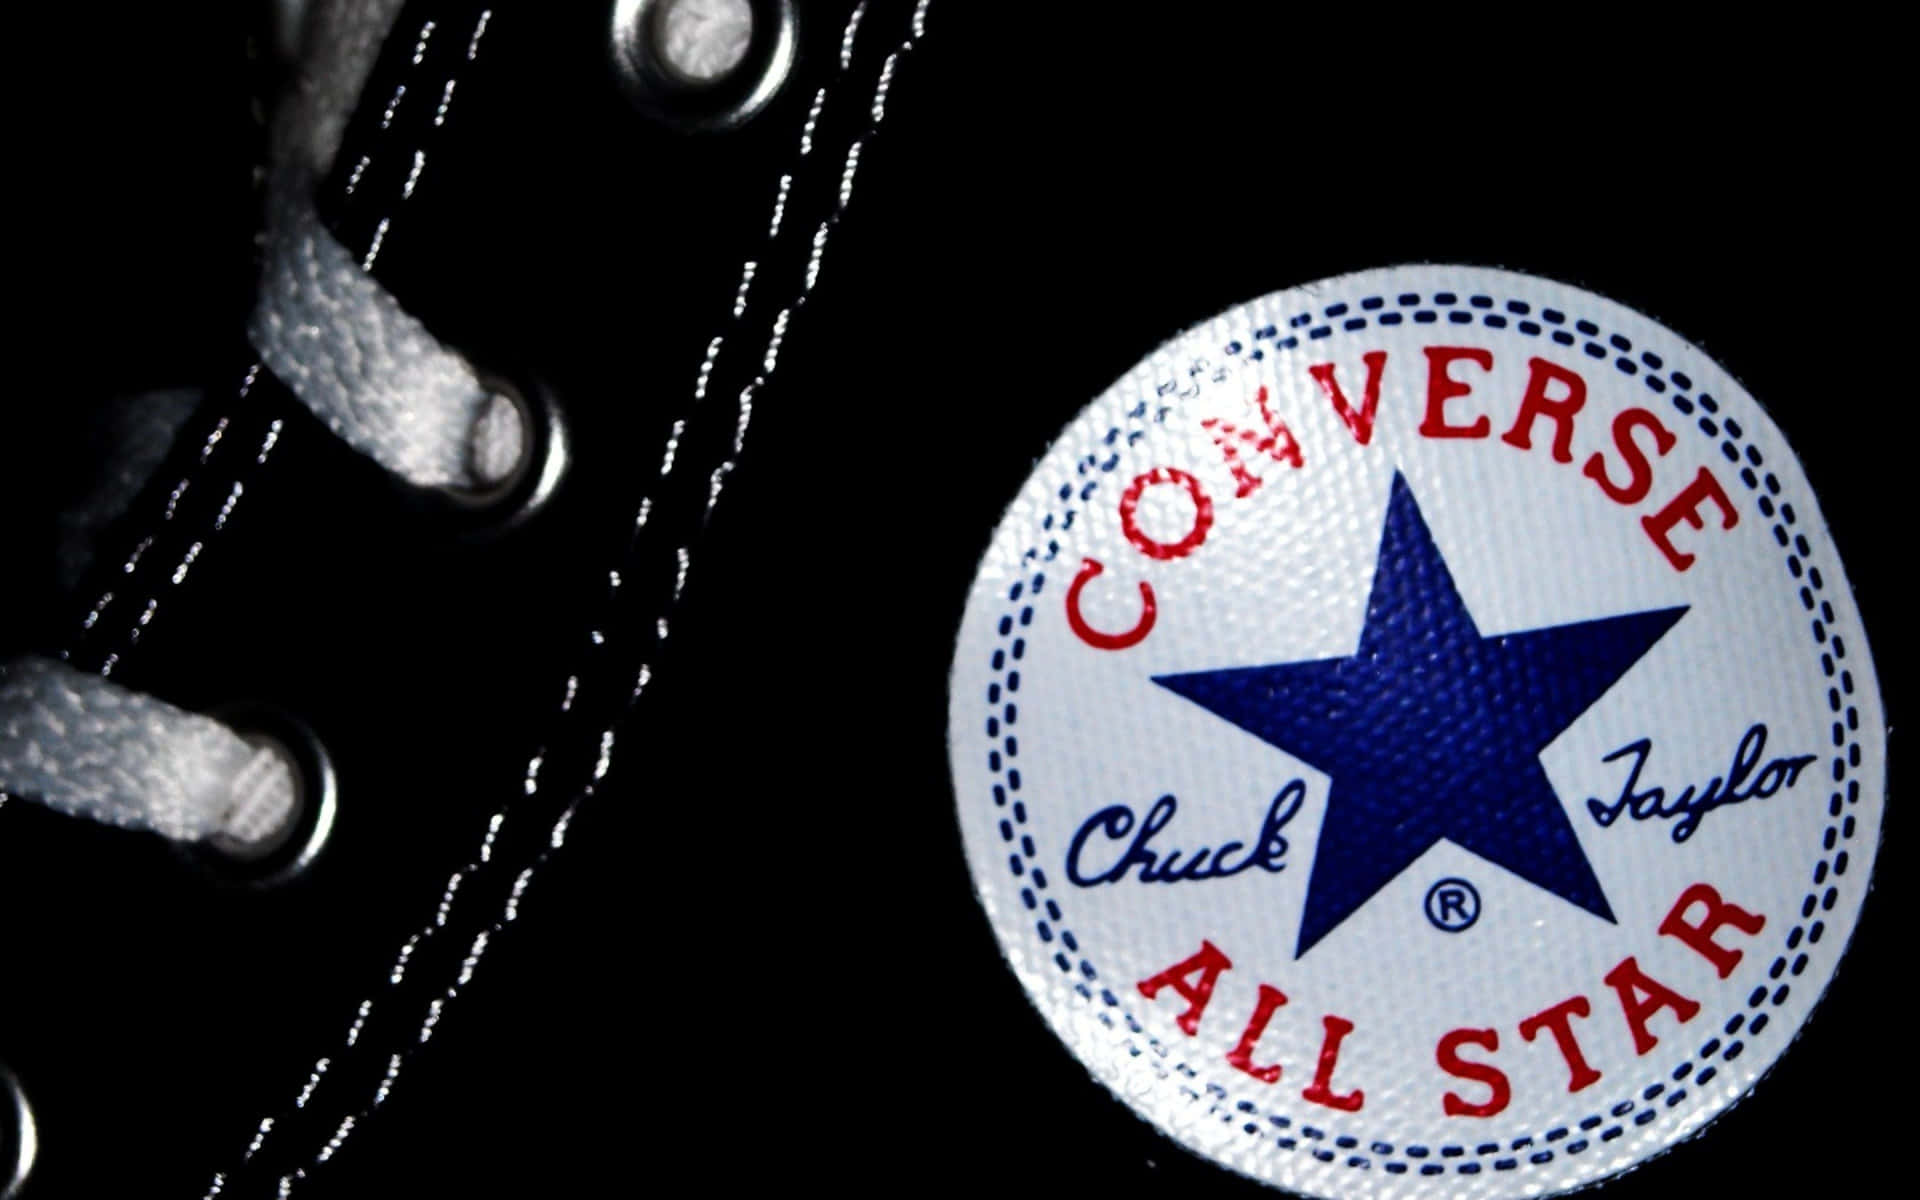 Hintergrundmit Converse-logo.